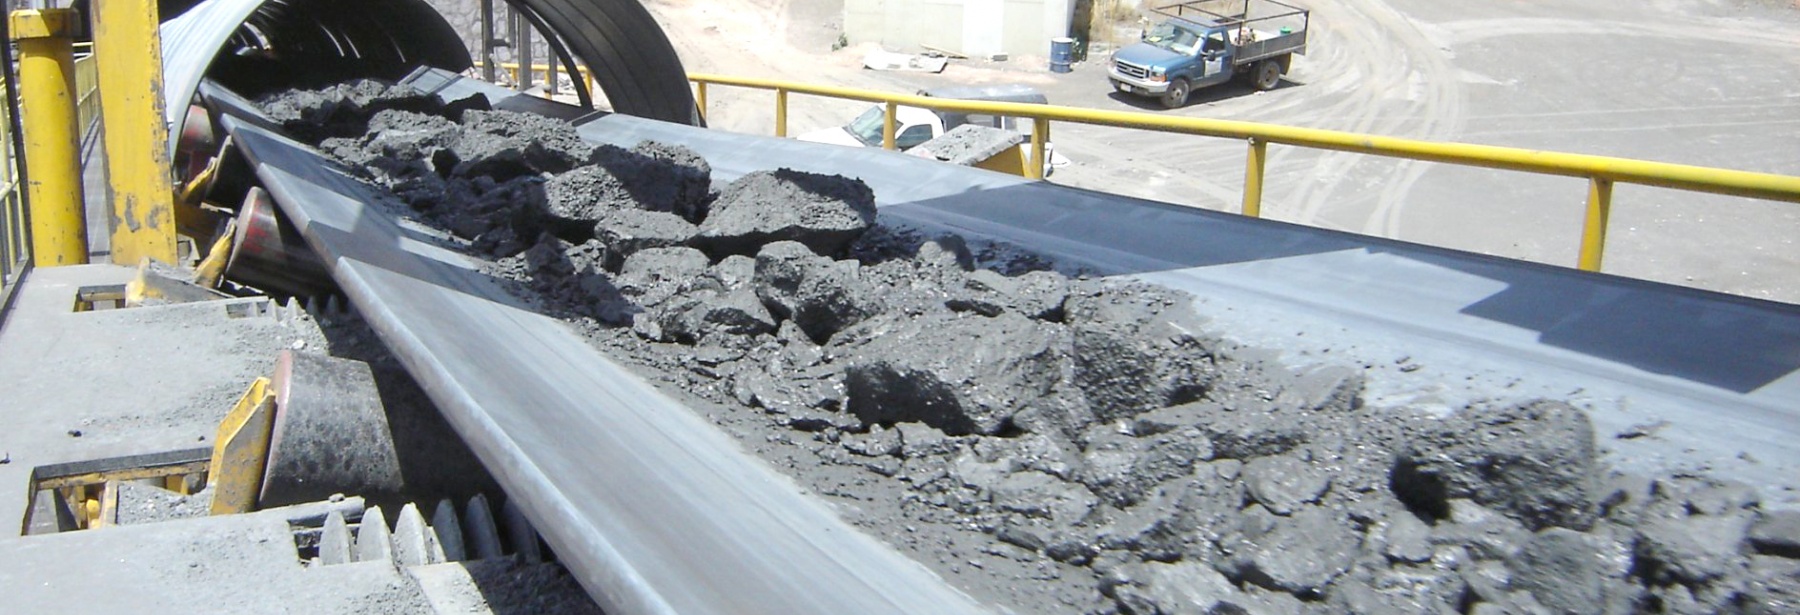 rubberen transportbanden onderhoud staalindustrie 